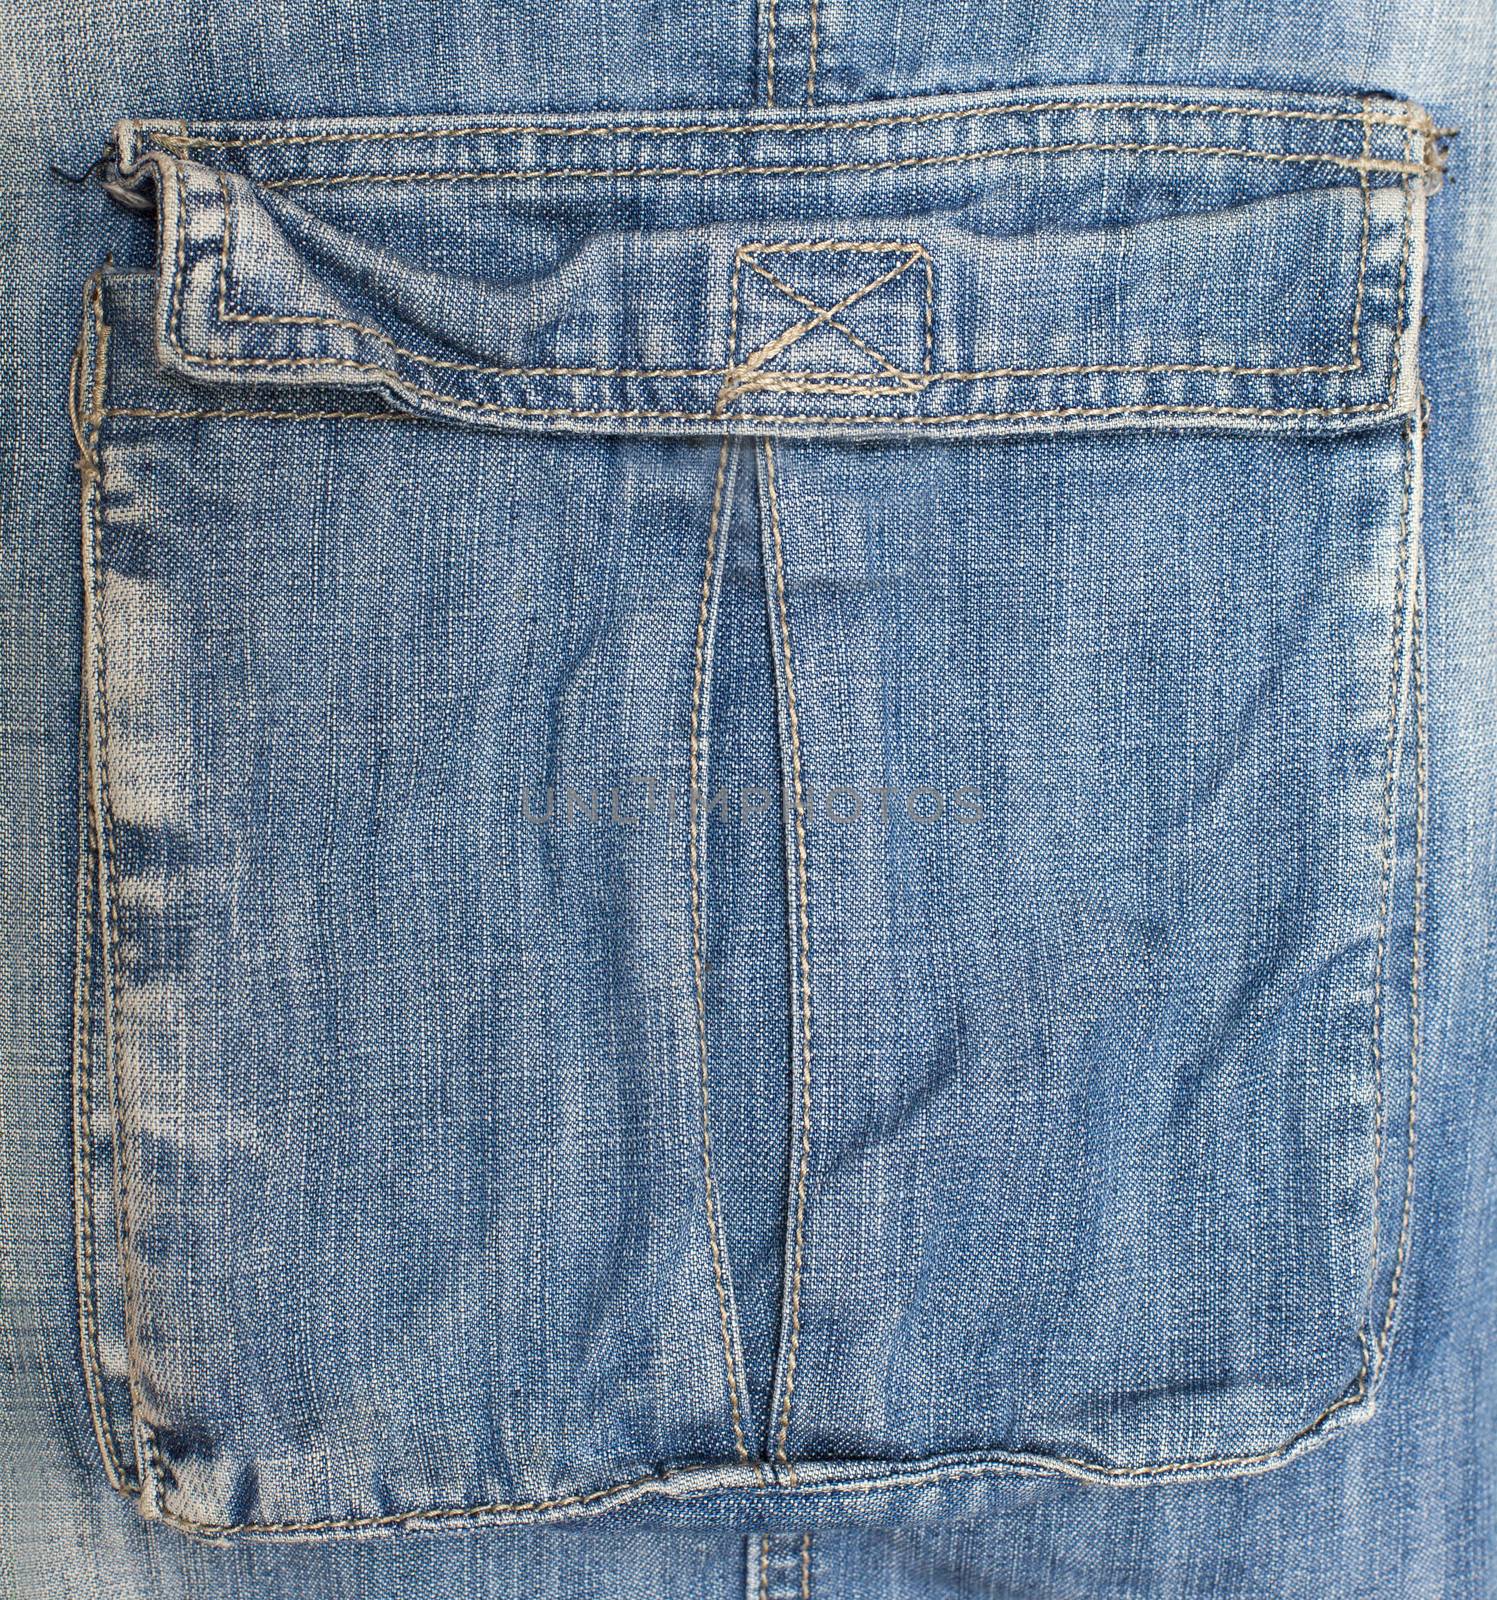 blue jeans pocket by anelina